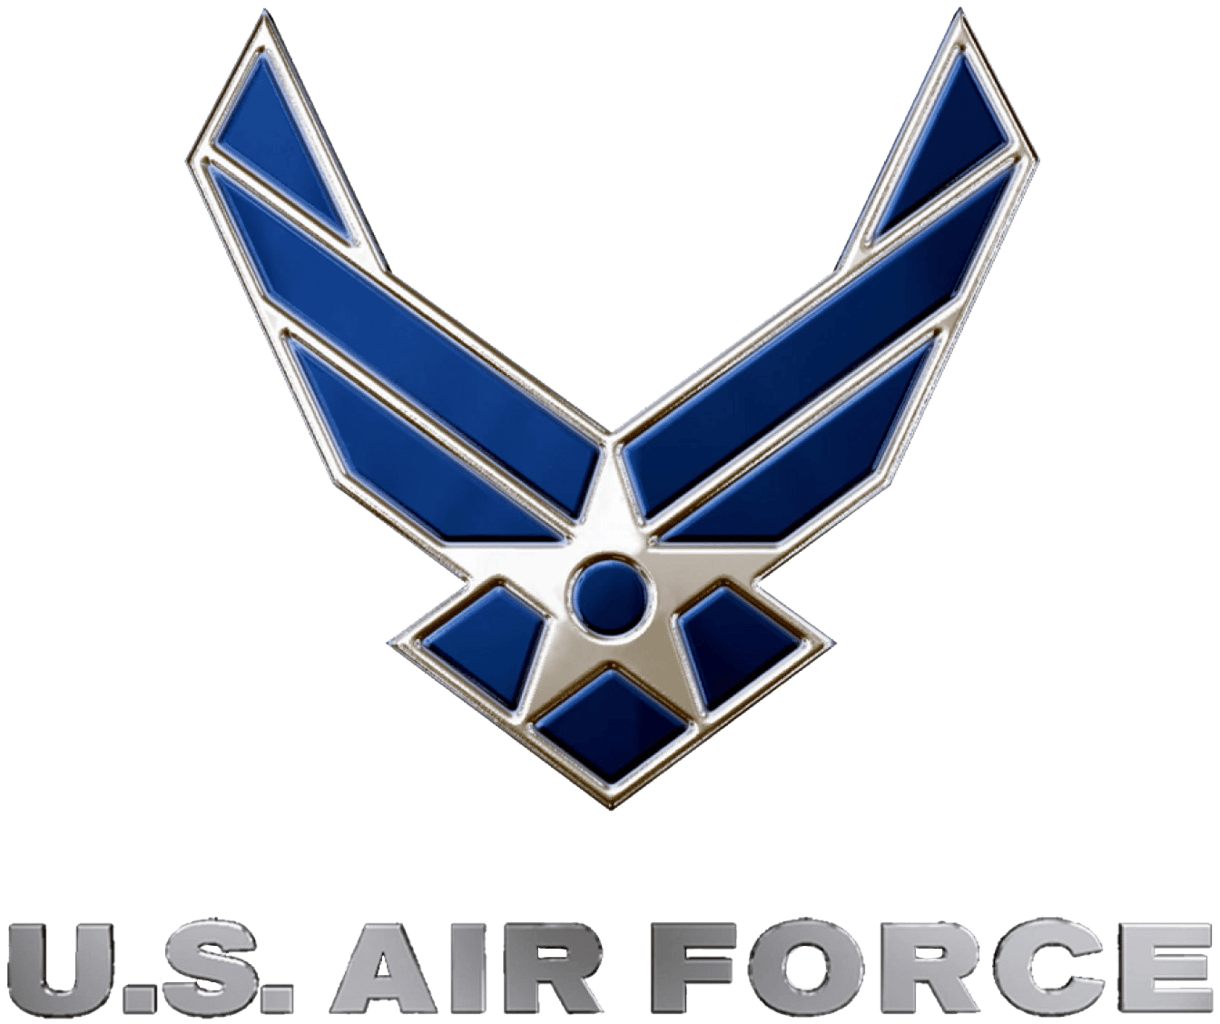 USAF Logo - File:USAF logo.png